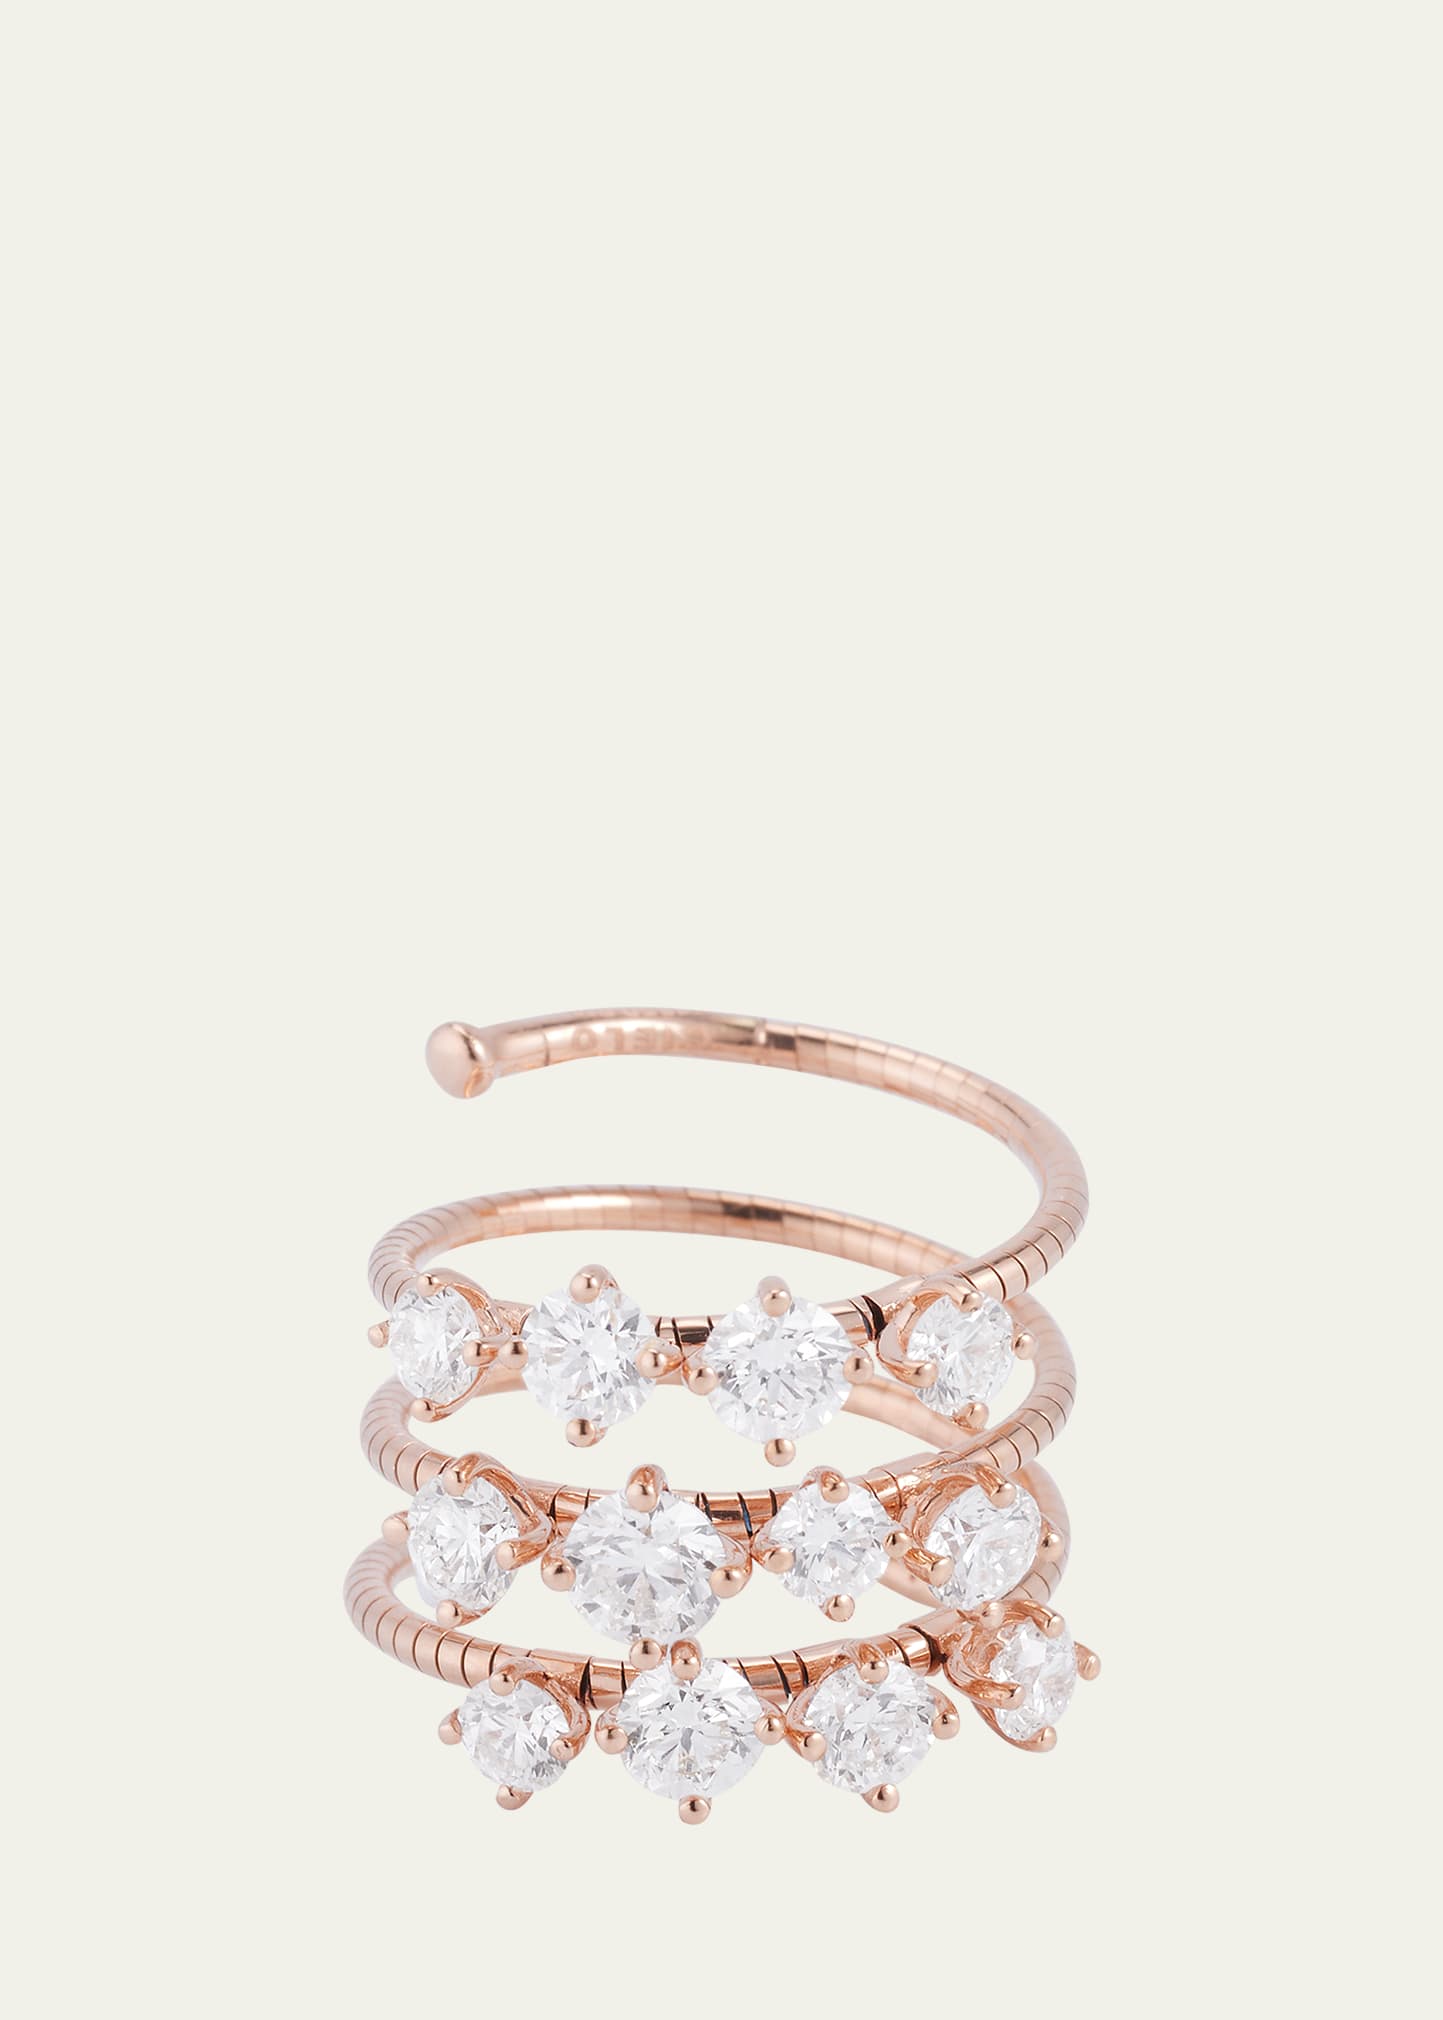 Mattia Cielo 18k Rose Gold 3 Wrap Ring With Prong Set Diamonds